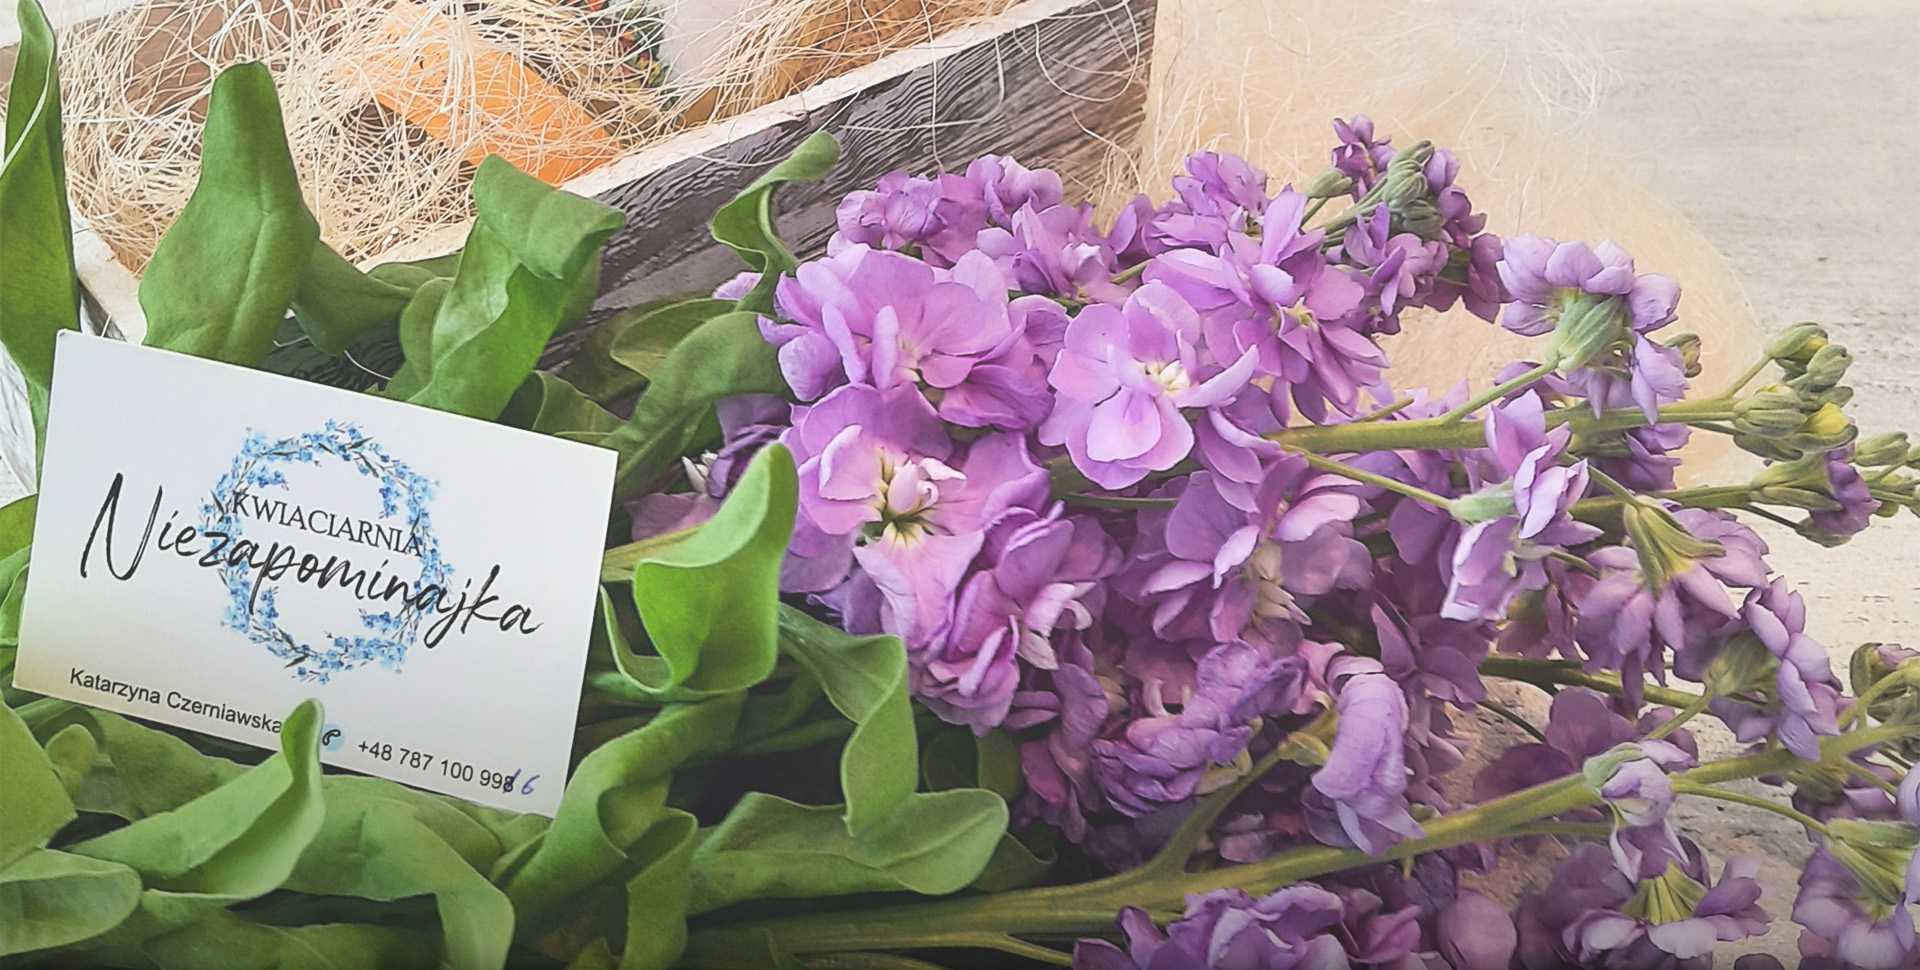 Slajd 1 - bukiet fioletowych kwiatów z wizytówką